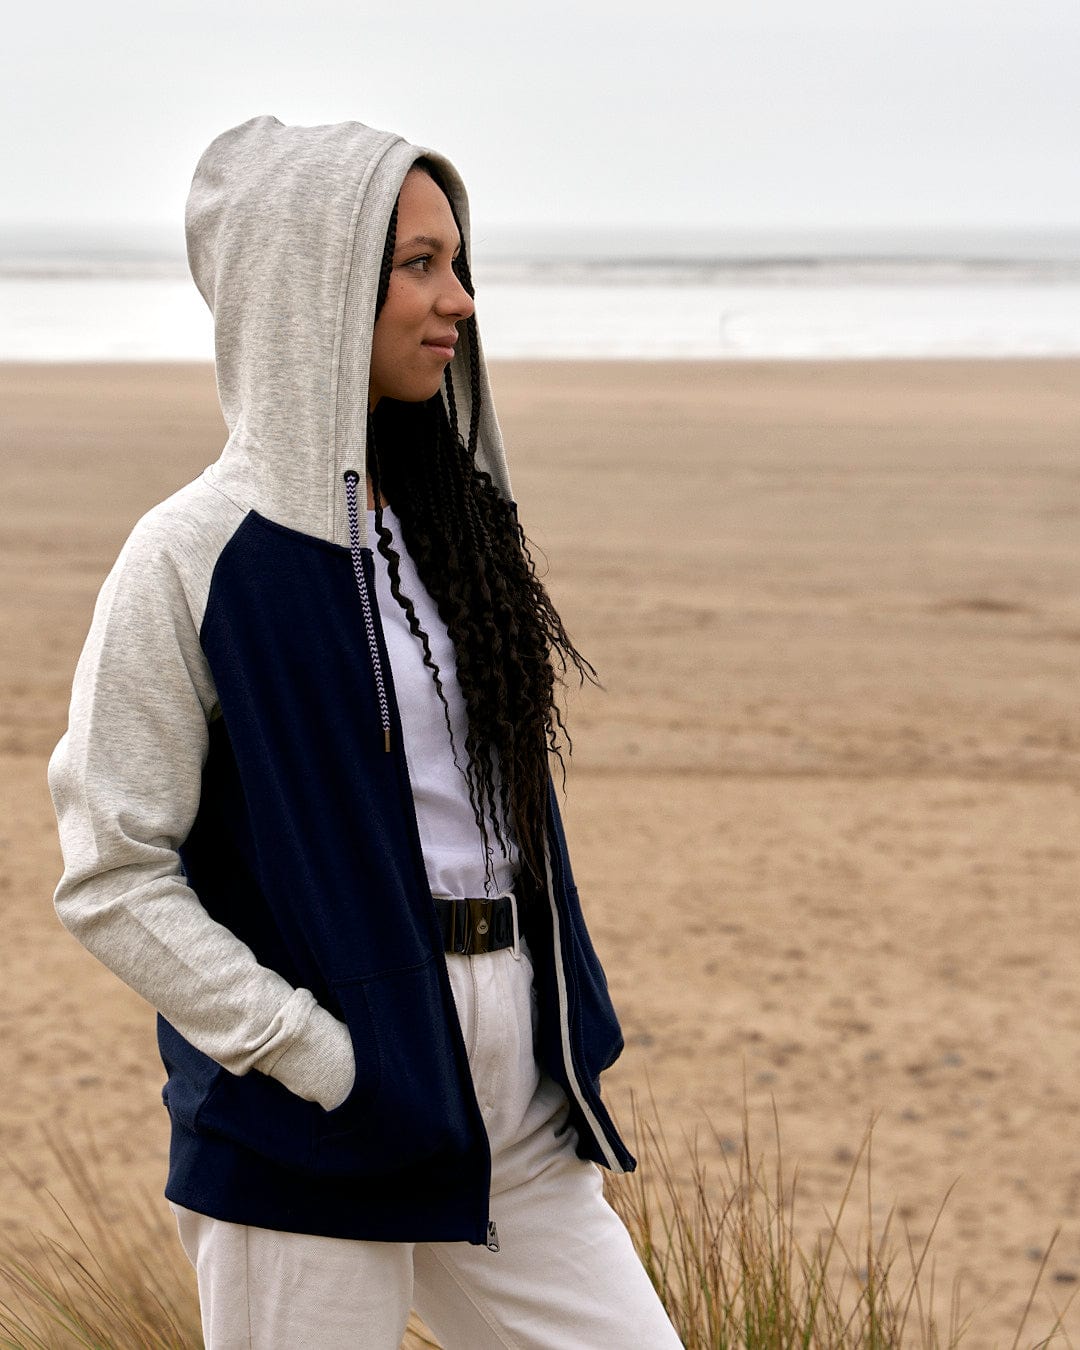 A woman wearing a Saltrock Trademark - Zip Hoodie - Dark Blue hoodie standing on the beach.